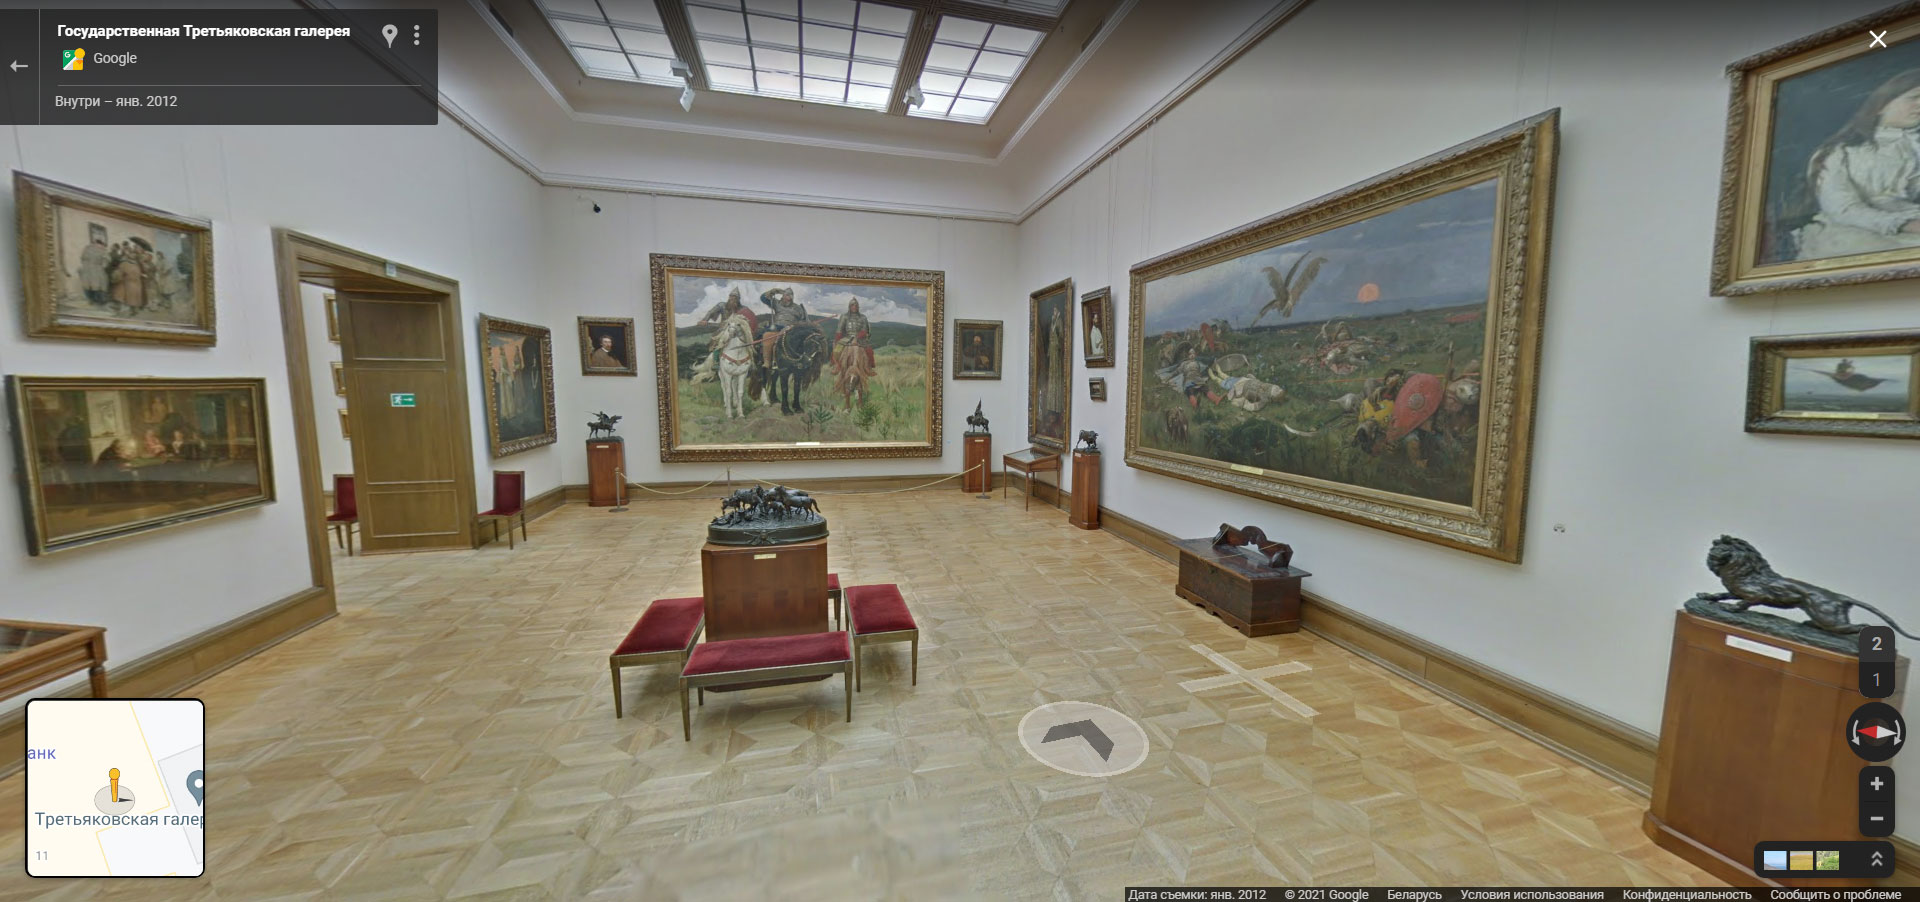 Виртуальное путешествие в Третьяковскую галерею Москвы